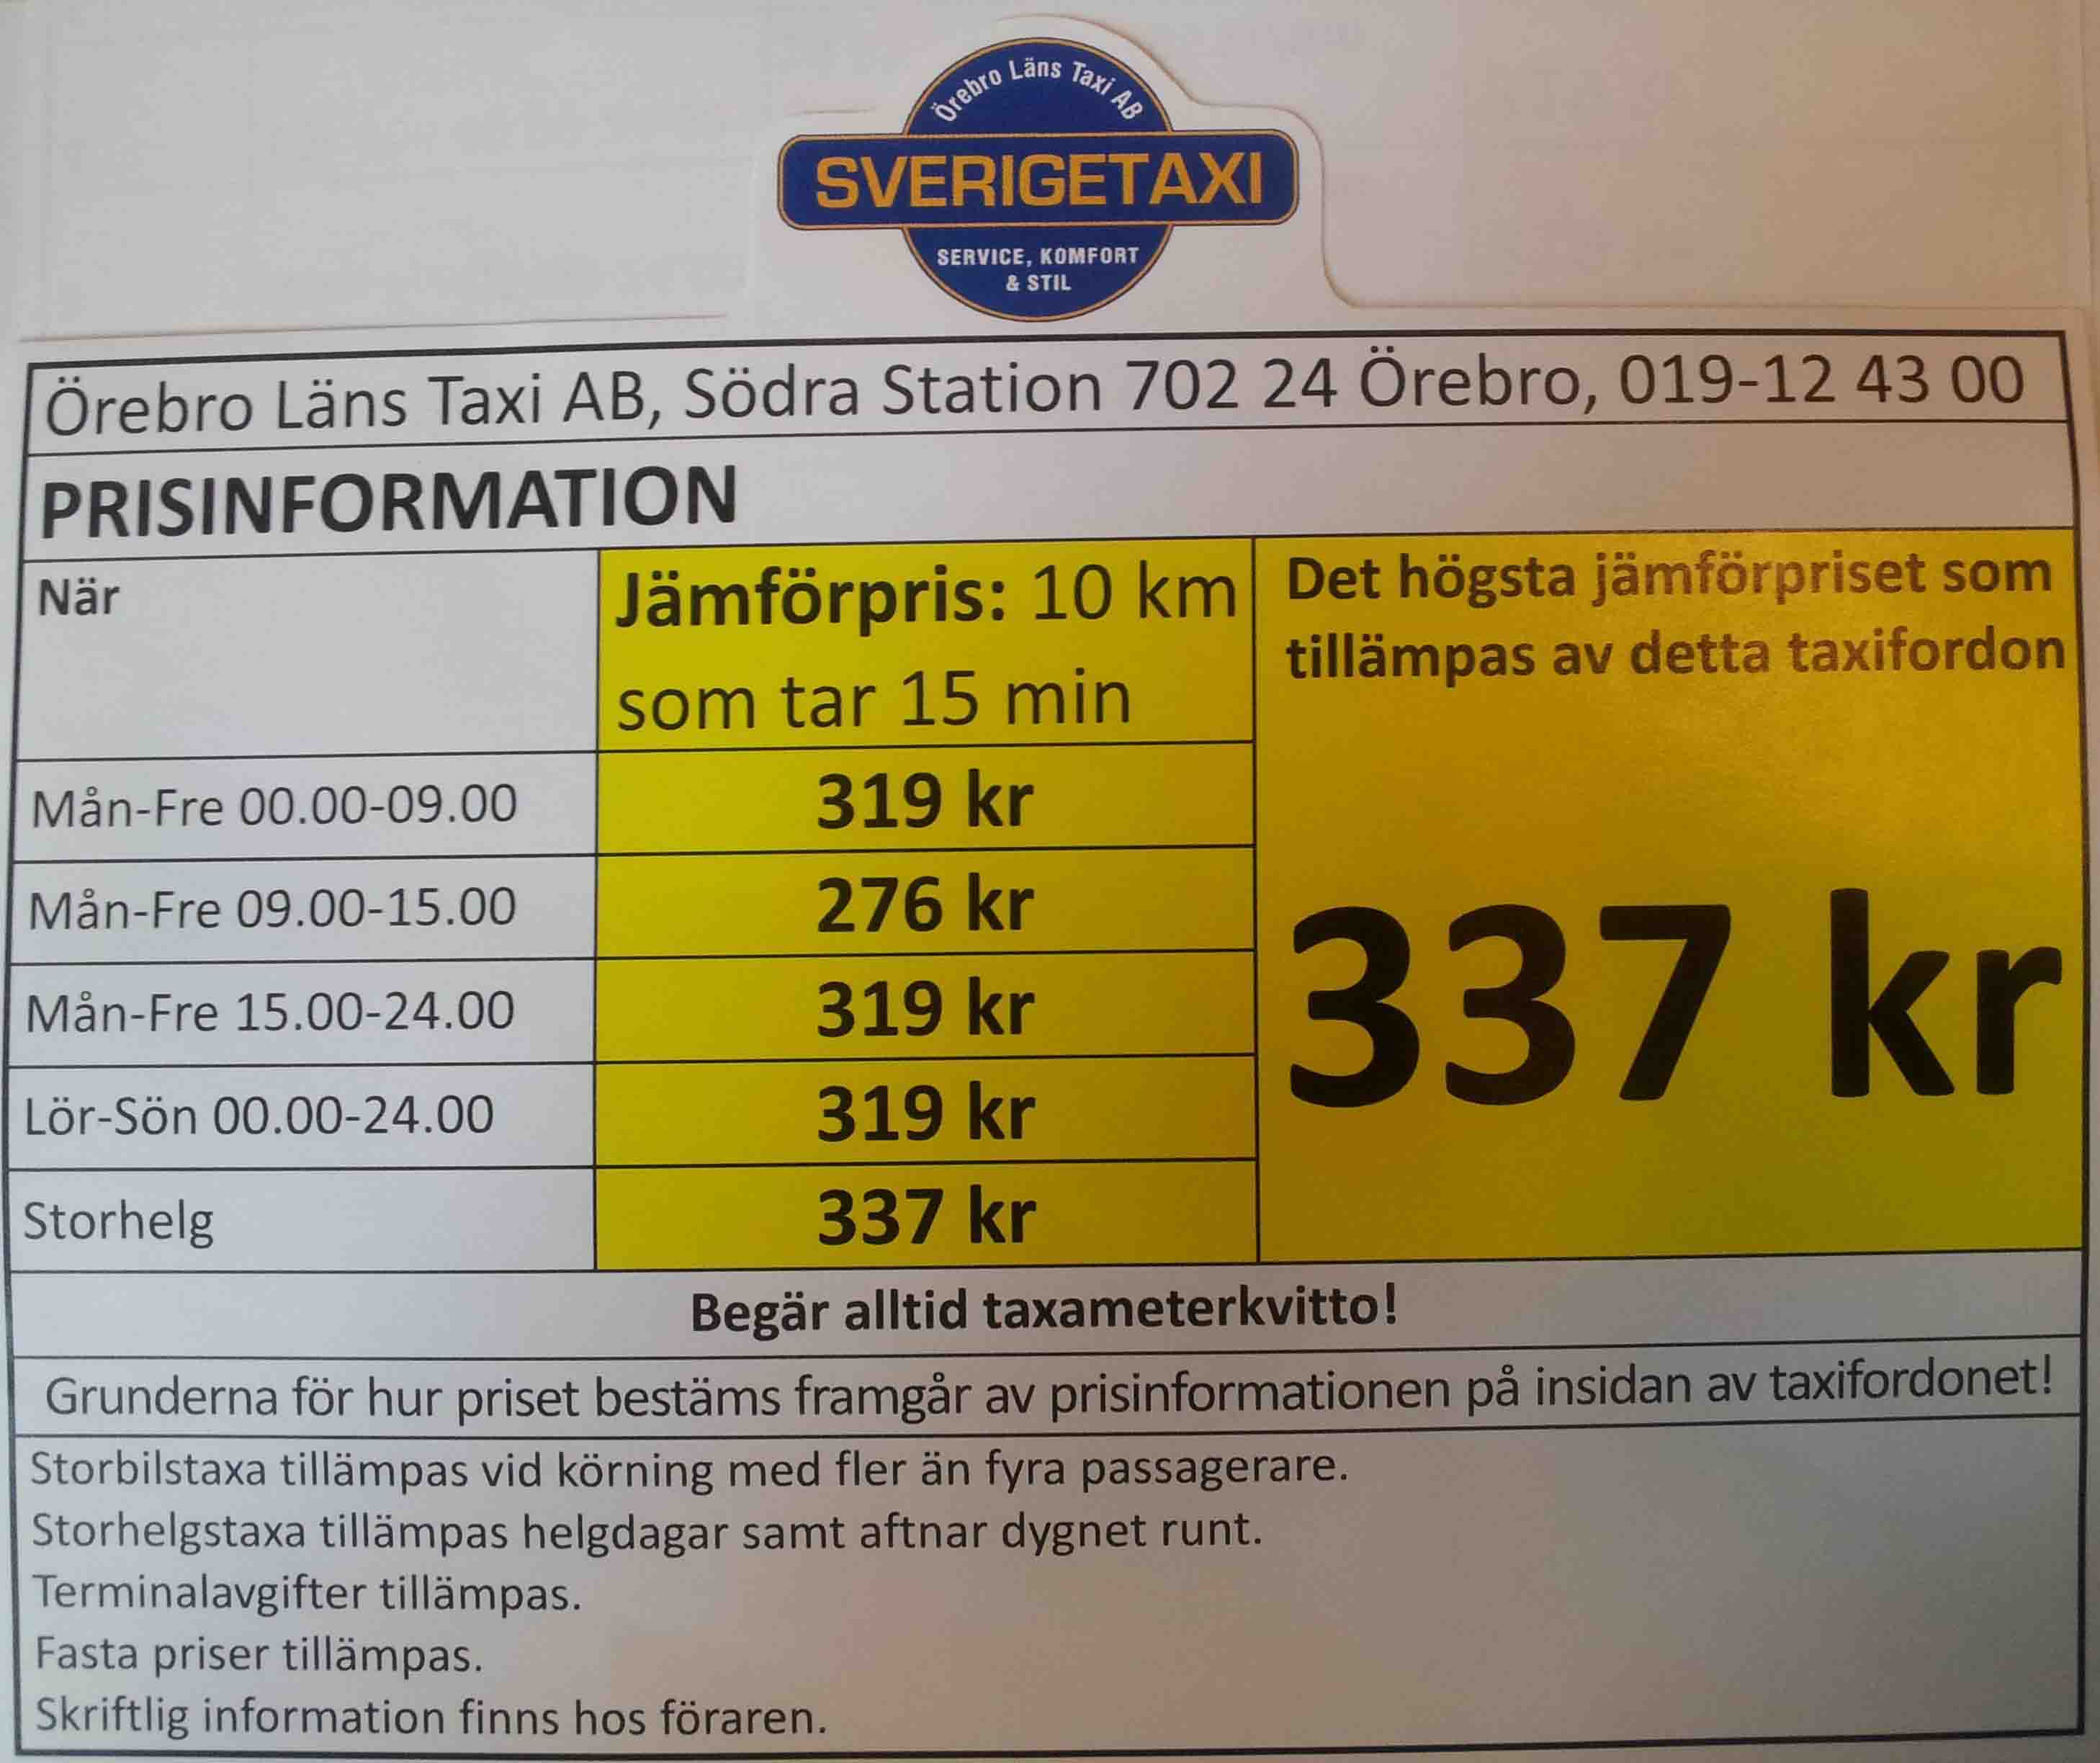 Prices Sverigetaxi in Örebro